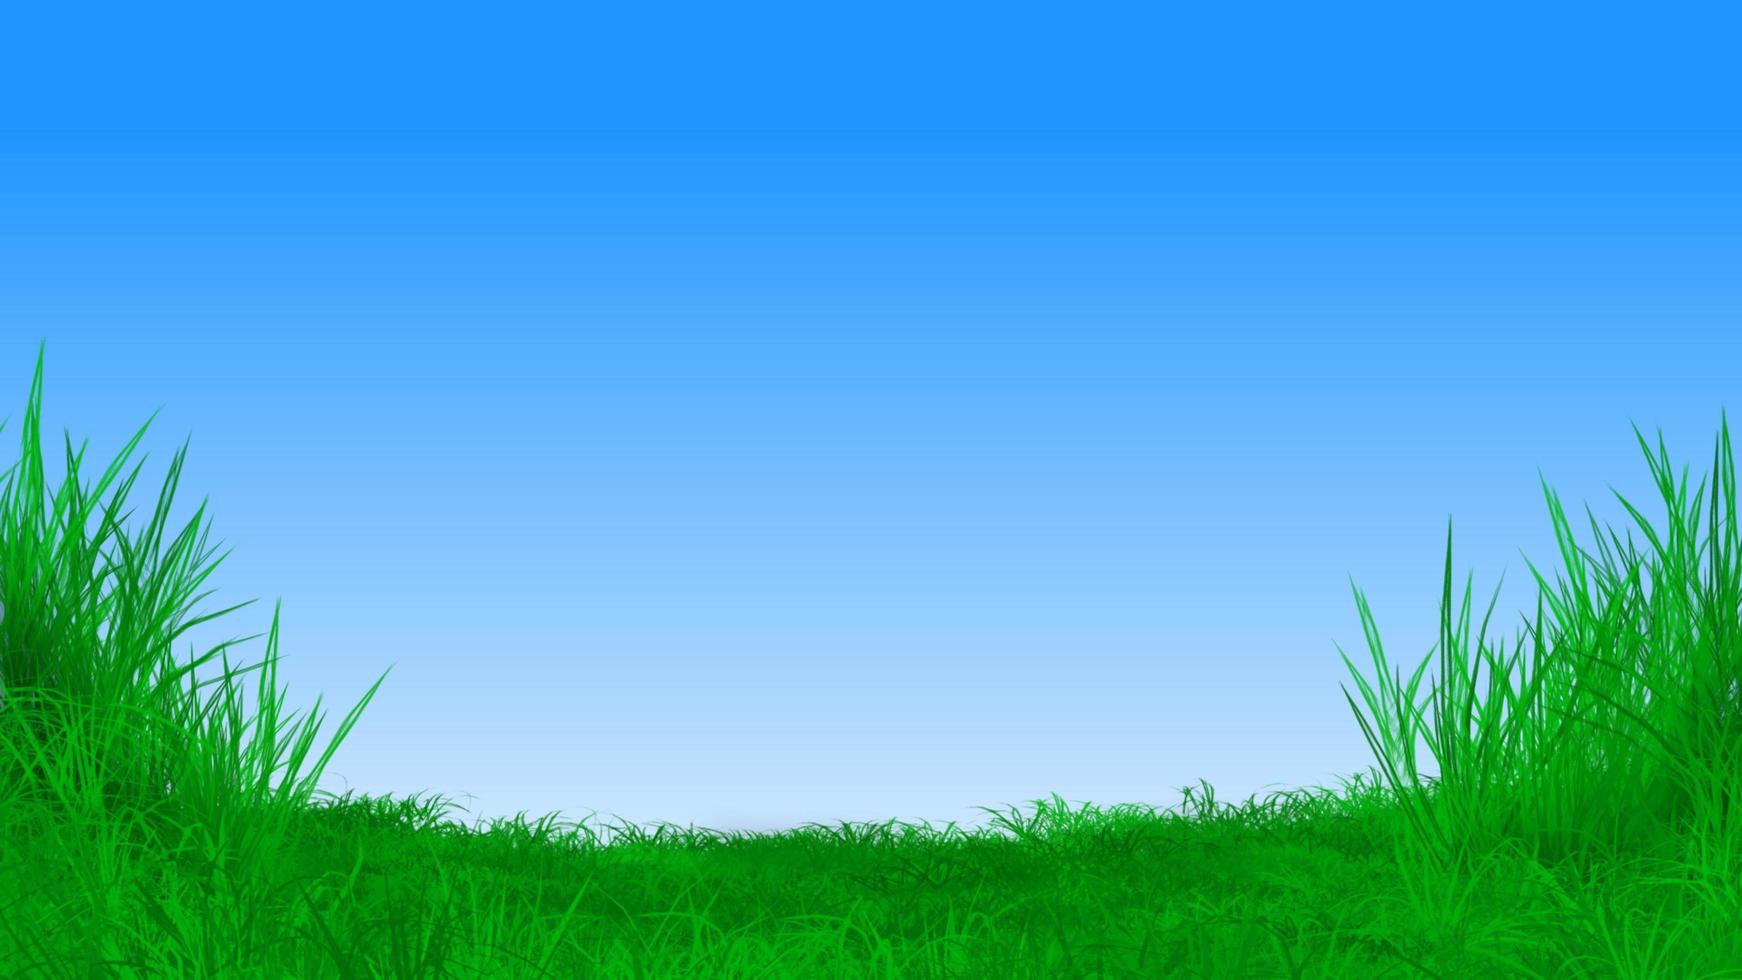 incroyable beau paysage de ciel bleu et d'herbe douce avec un style aquarelle. vous pouvez utiliser cet atout pour un dépliant, une carte, une affiche, un message d'accueil, un jeu, une diffusion, une diffusion en continu, une promotion, une éducation et un modèle. photo